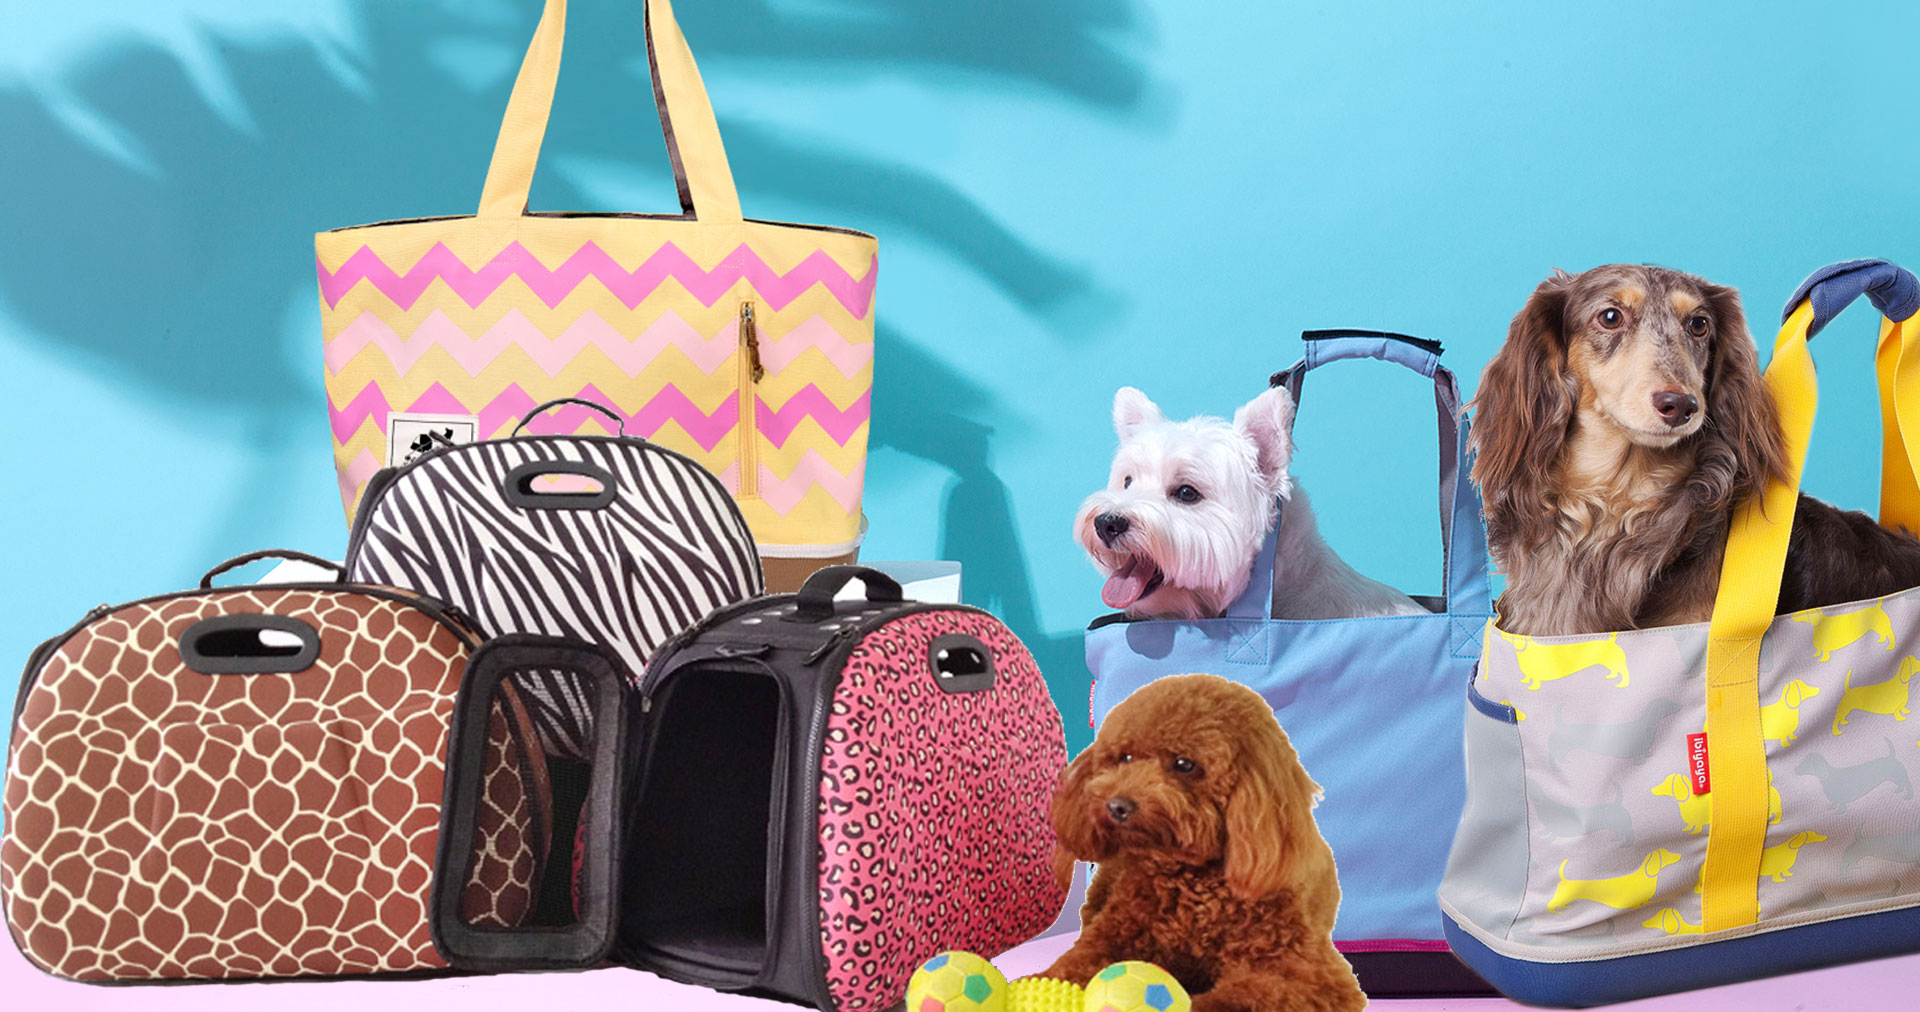 pink panda Kids Backpack Toddler Bag Plush Animal Cartoon Mini Travel Bag  for Baby Girl Boy